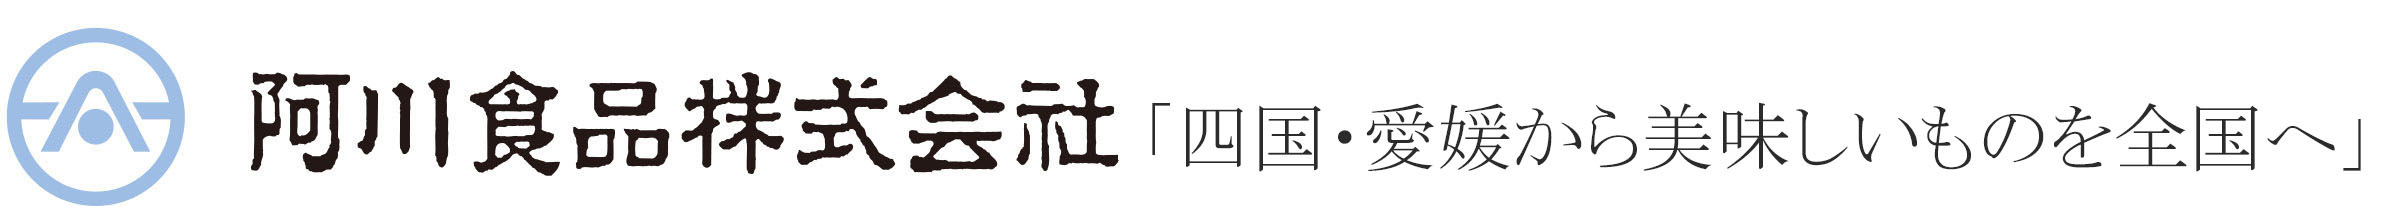 阿川食品ロゴ